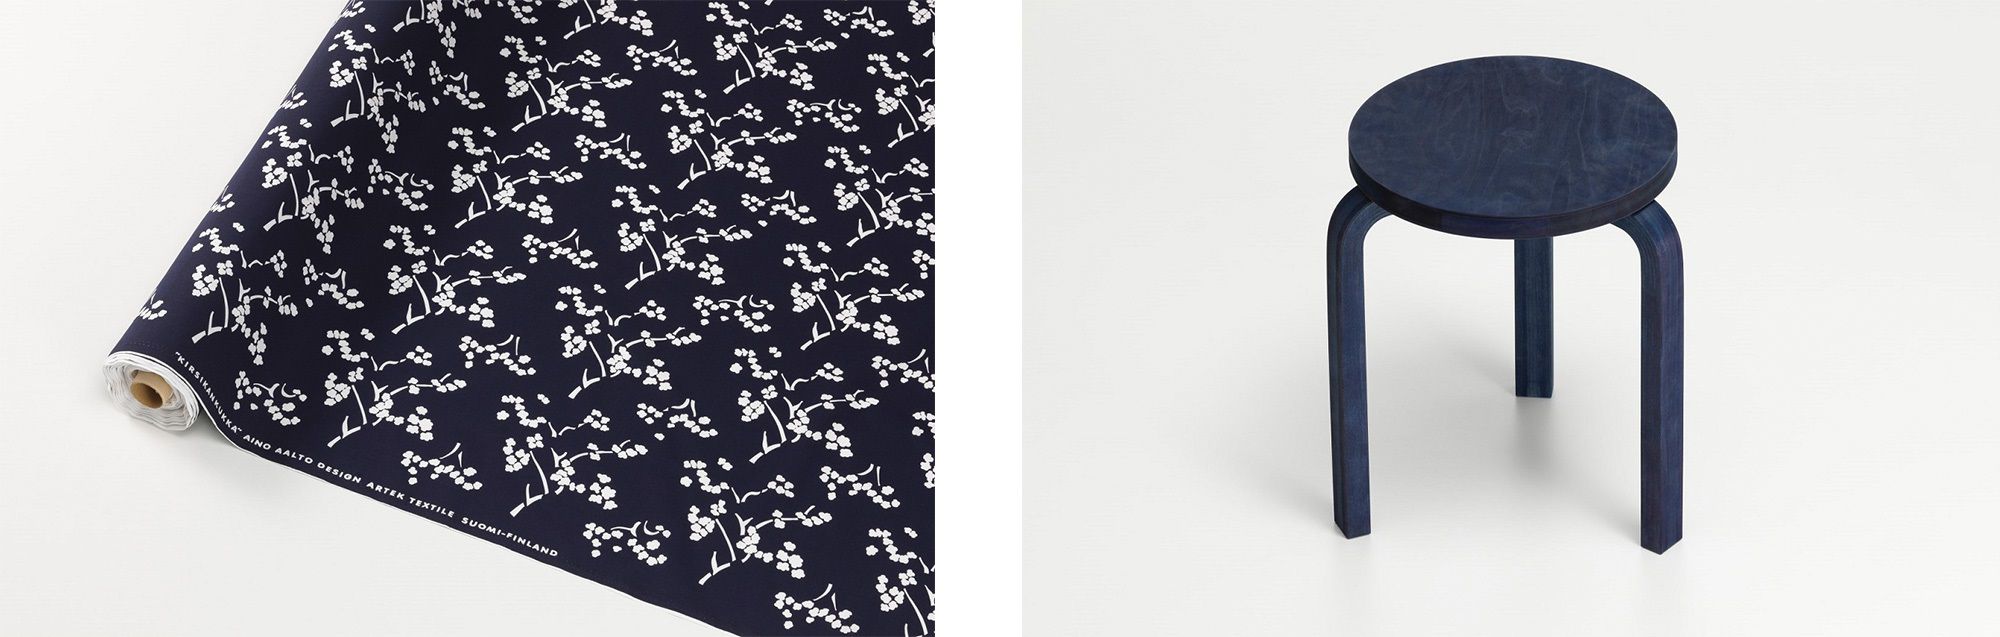 （ 左） 重版的織物圖案「Kirsikankukka （ 芬蘭語： 櫻花） 」。（ 右） 芬蘭產樺木染成日本藍 「STOOL 60 藍染」。均為在米蘭推出的 FIN / JPN Friendship Collection。